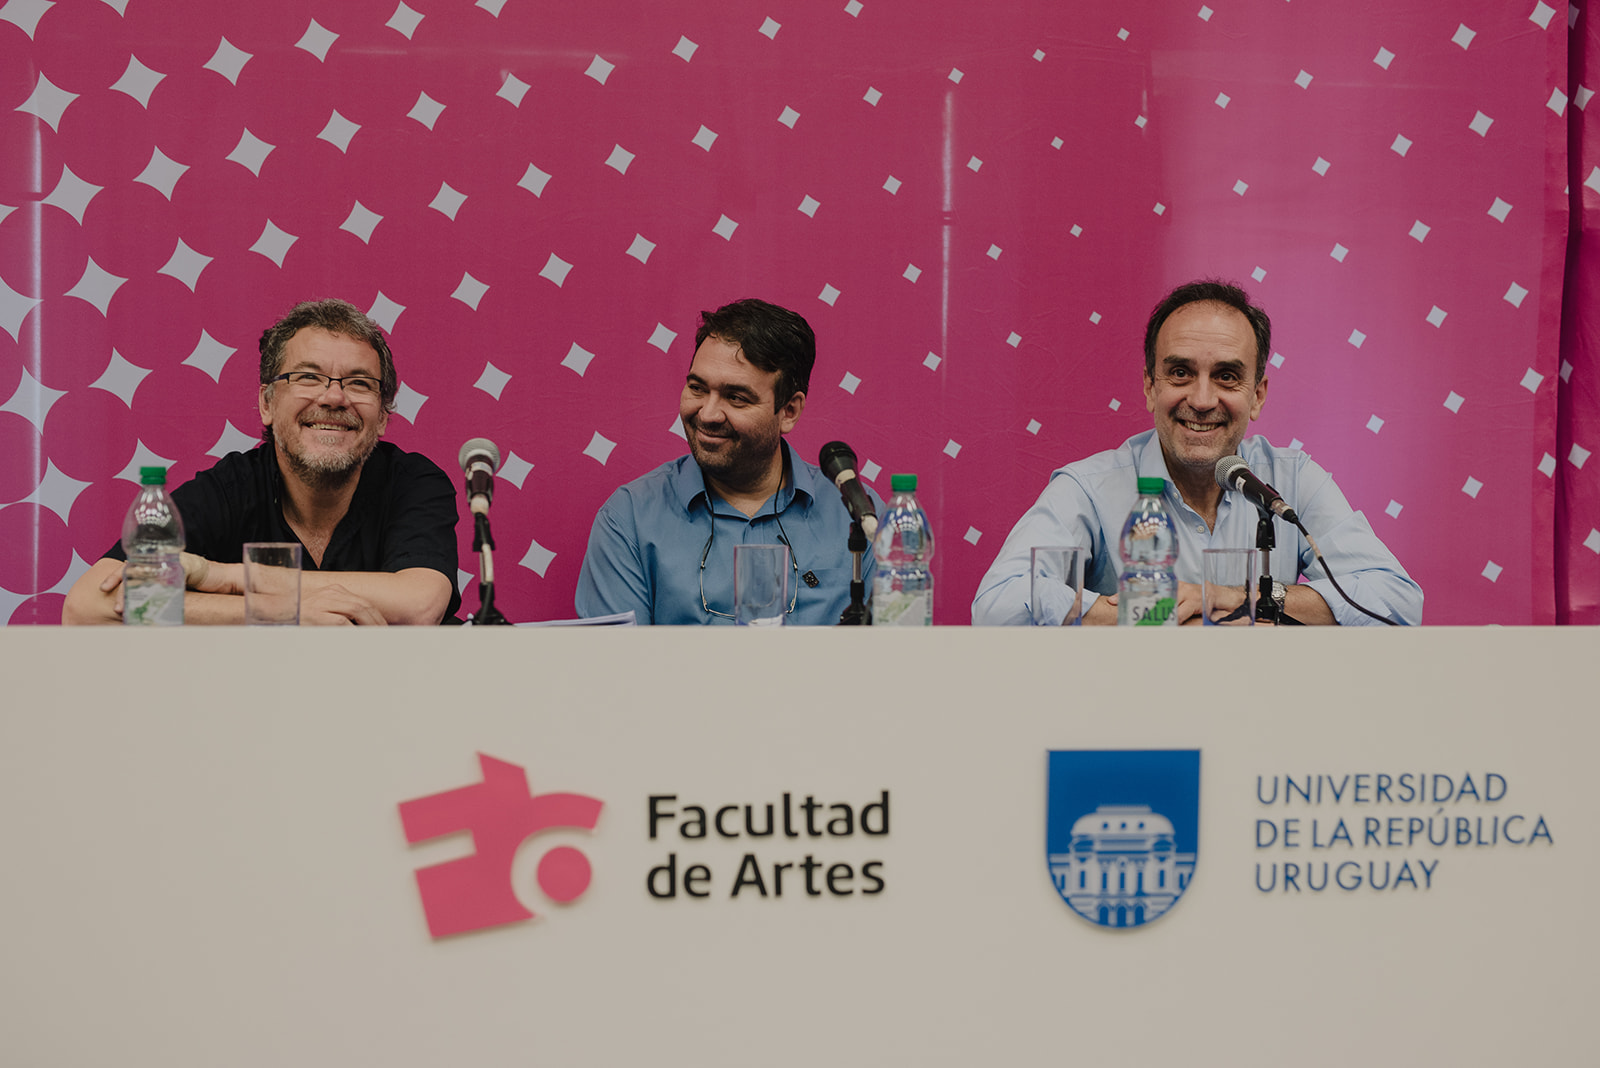 Imagen de la mesa de apertura del SIPACV6 con Gonzalo Vicci, Flávio Gomes de Oliveira y Fernando Miranda en la mesa de apertura. Fotografía: Federico López